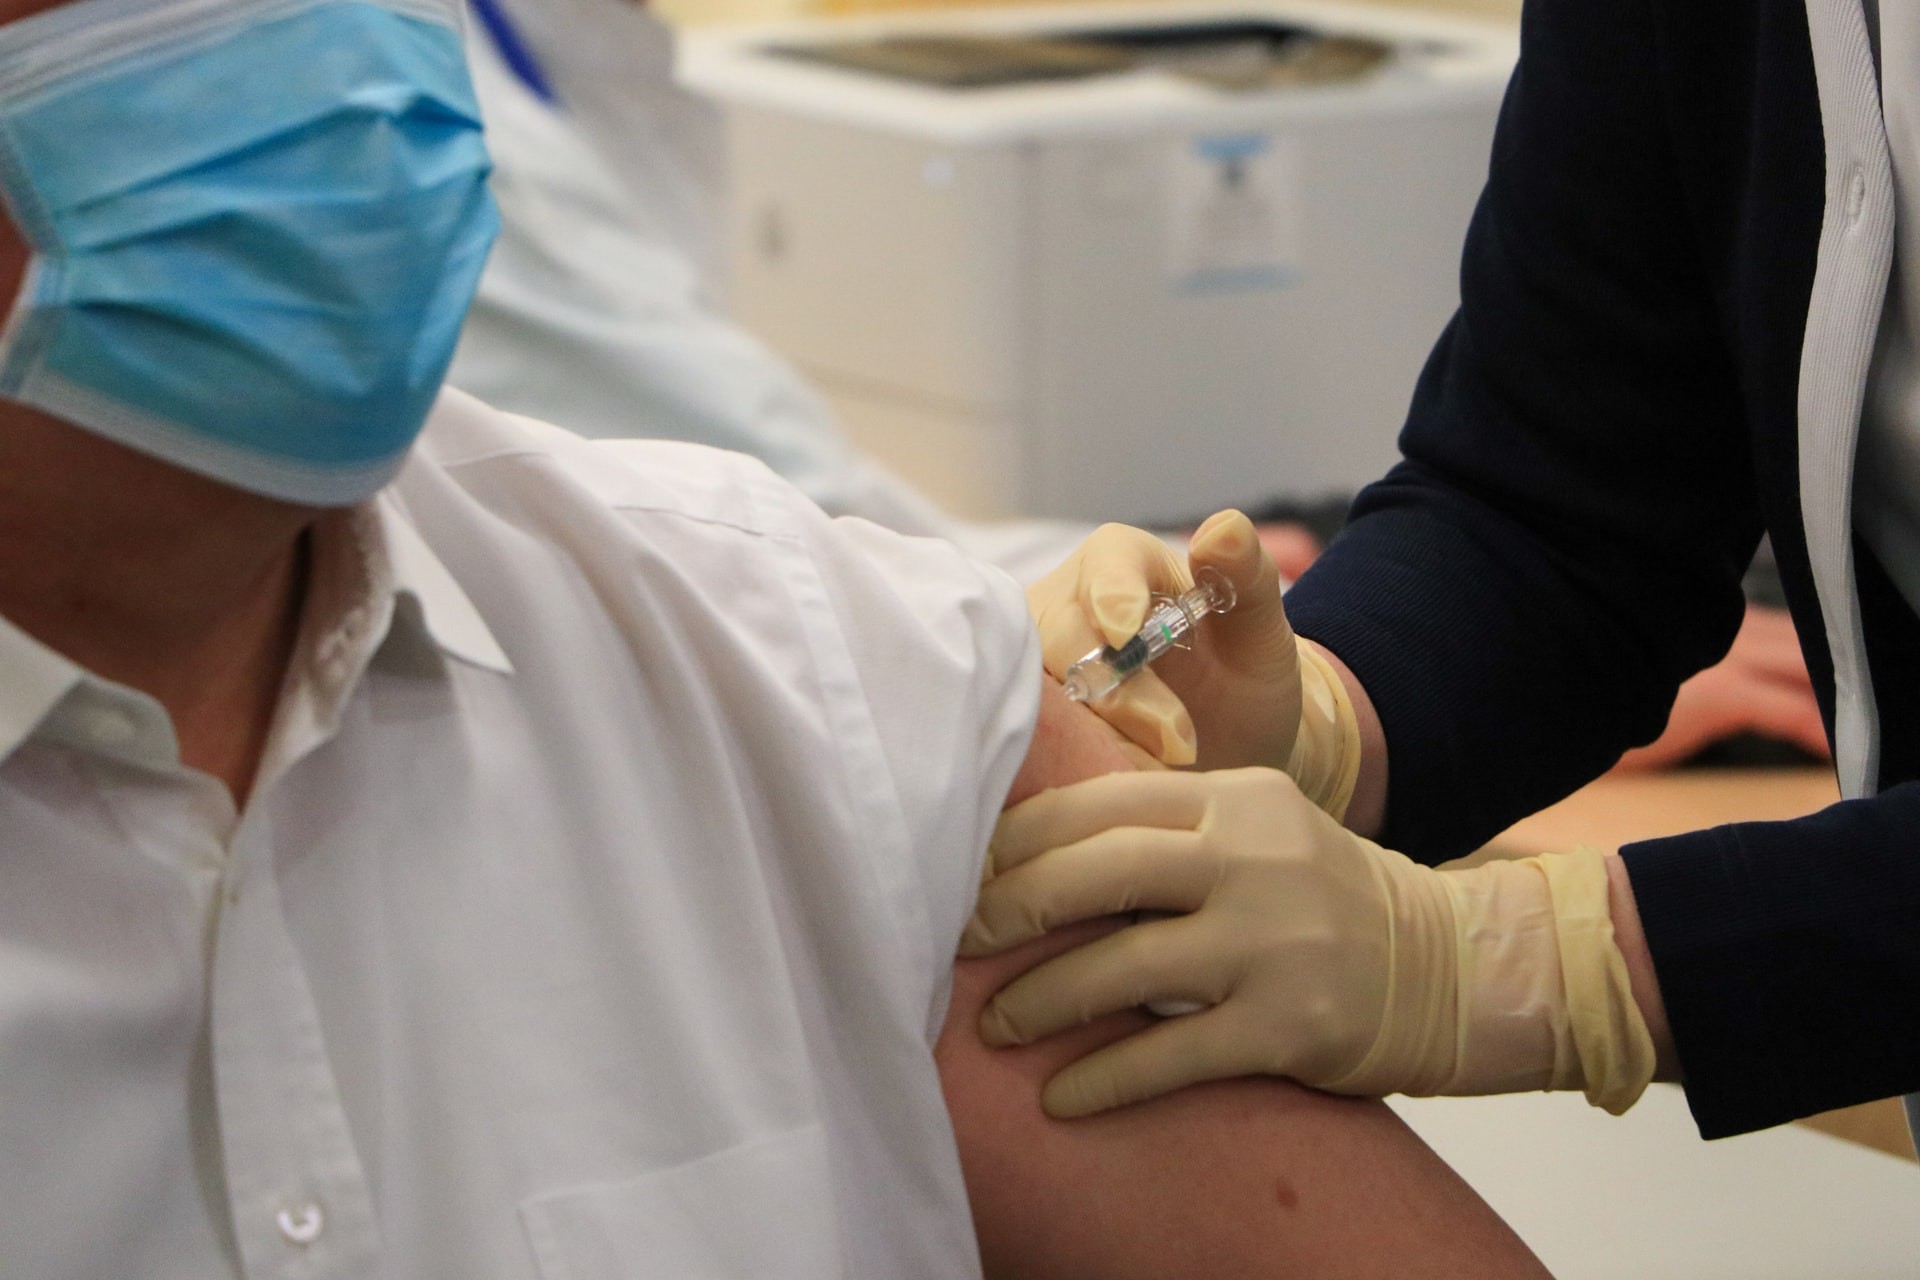 Testes em humanos com o imunizante da empresa Sichuan Clover foram aprovados no Brasil pela Agência Nacional de Vigilância Sanitária (Anvisa) na última sexta-feira (16) (Foto: Macau Photo Agency/Unsplash)